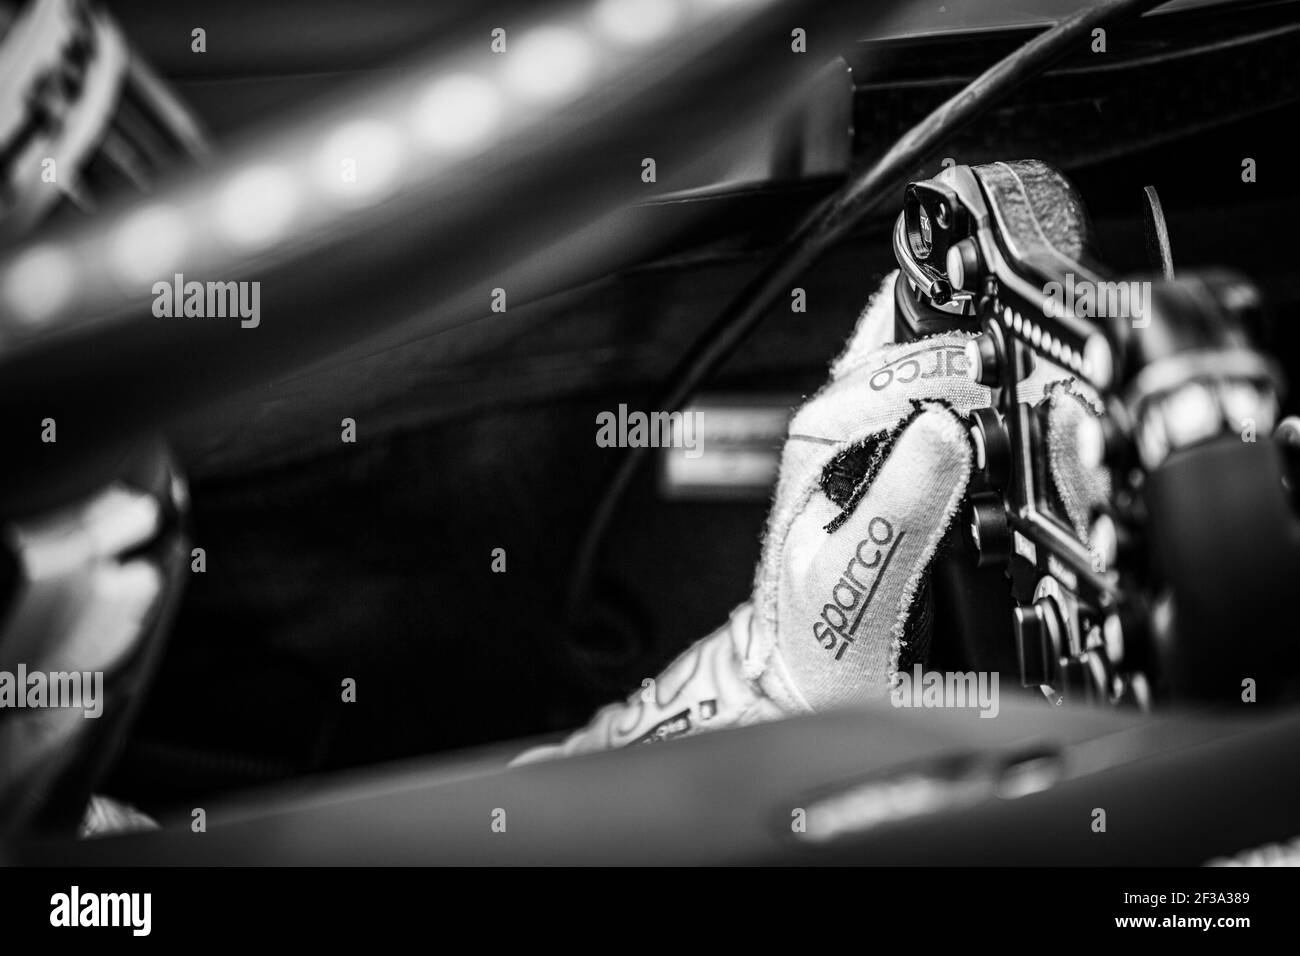 VANDOORNE Stoffel (bel), Venturi VFE05 Team HWA Racelab, Portrait während der Formel-E-Meisterschaft 2019, in Bern, Schweiz vom 20. Bis 22. juni - Foto Clement Luck / DPPI Stockfoto